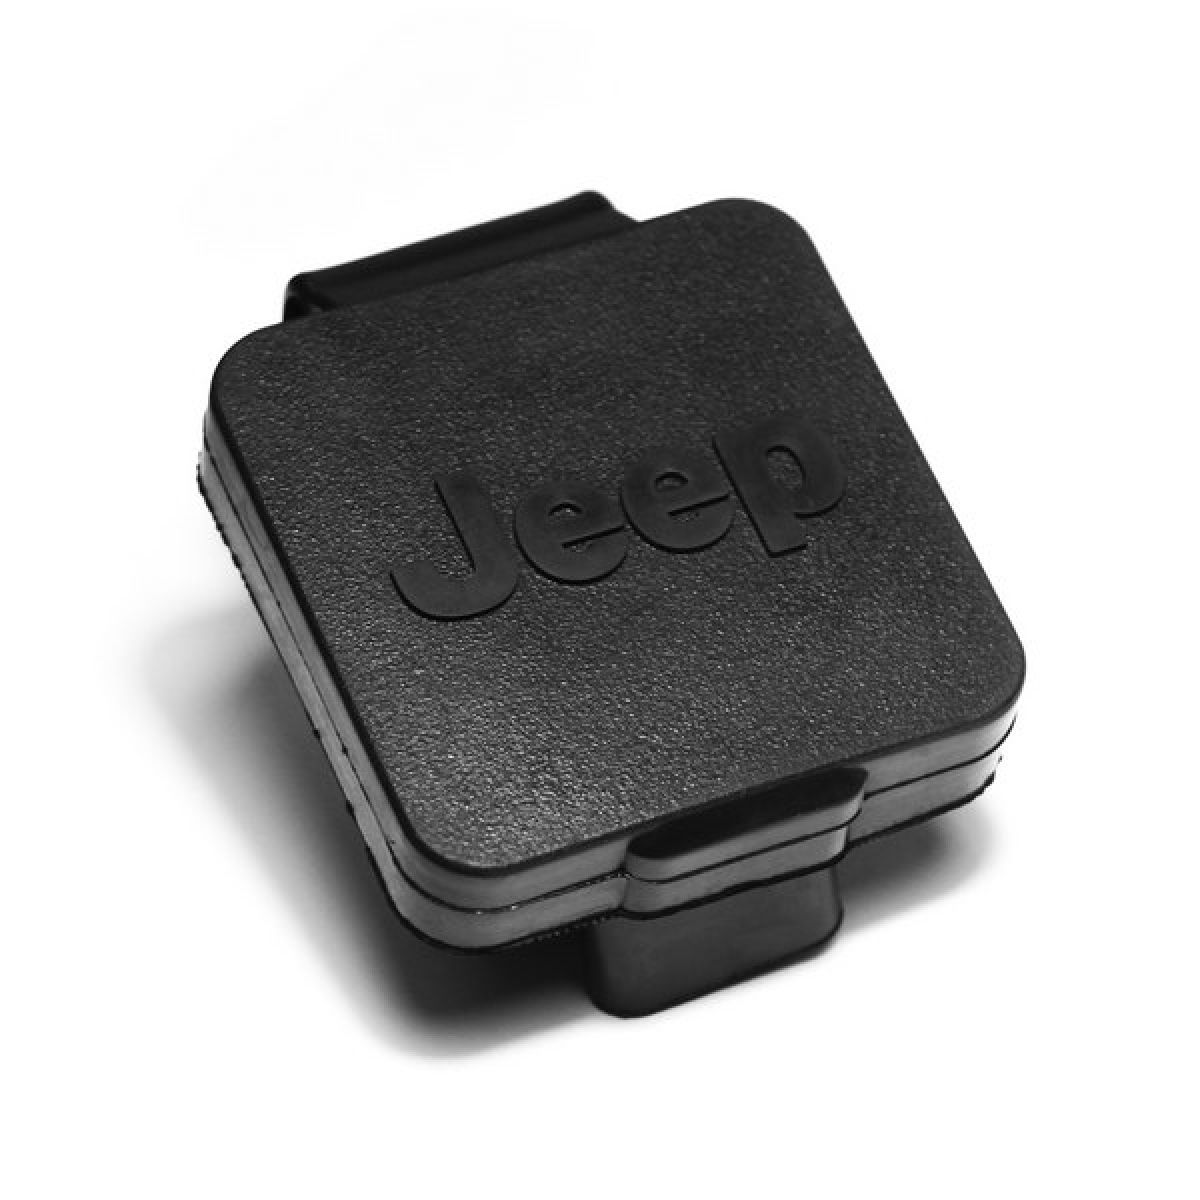 Abdeckung Cover Anhängerkupplung US mit Jeep Logo Jeep Wrangler Rugged  Ridge 11580.25 2 Inch Hitch Plug